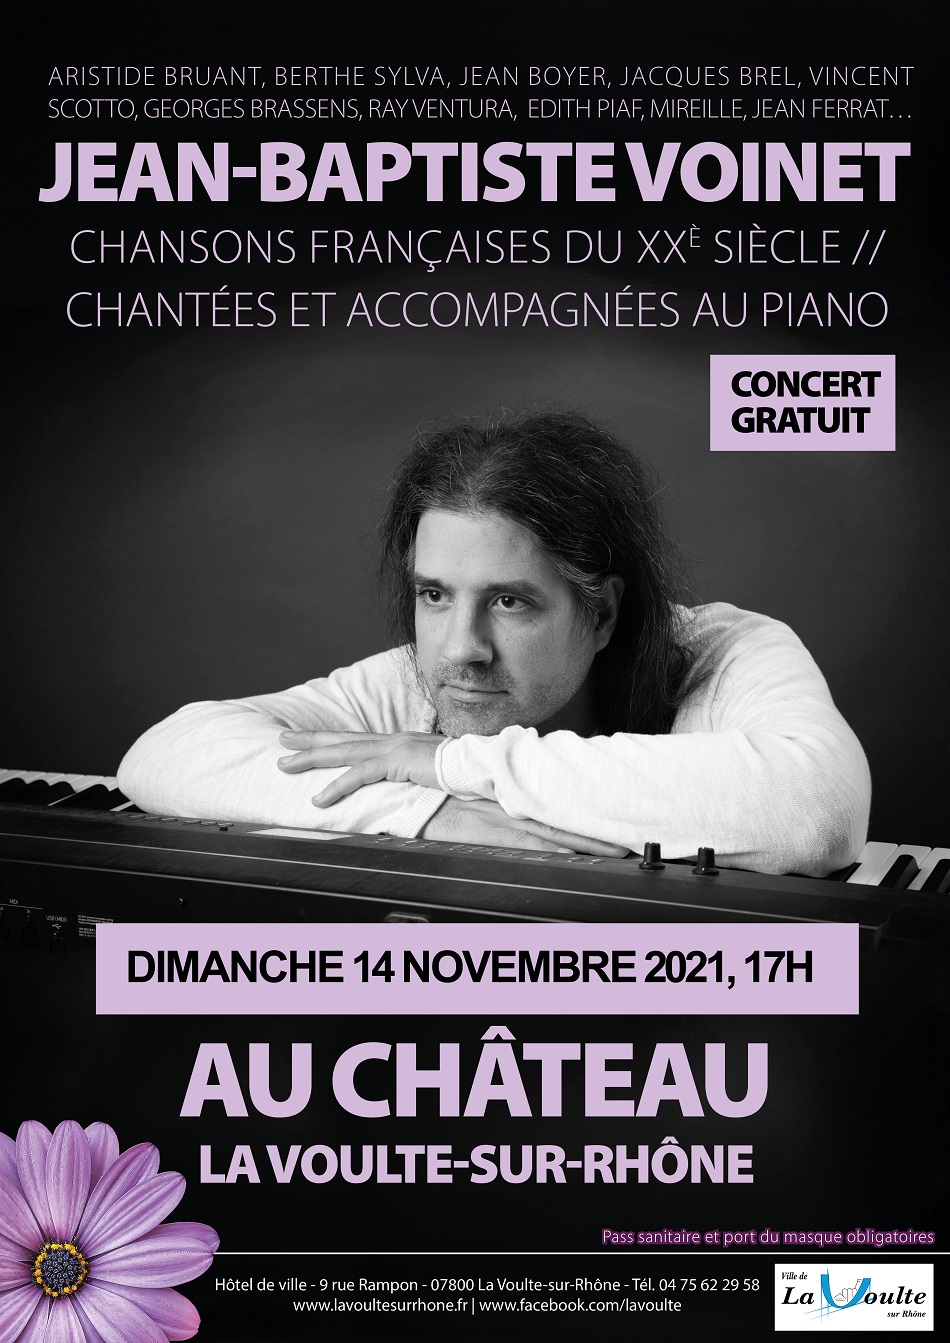 Jean-Baptiste Voinet en concert au château de La Voulte-sur-Rhône, affiche officielle